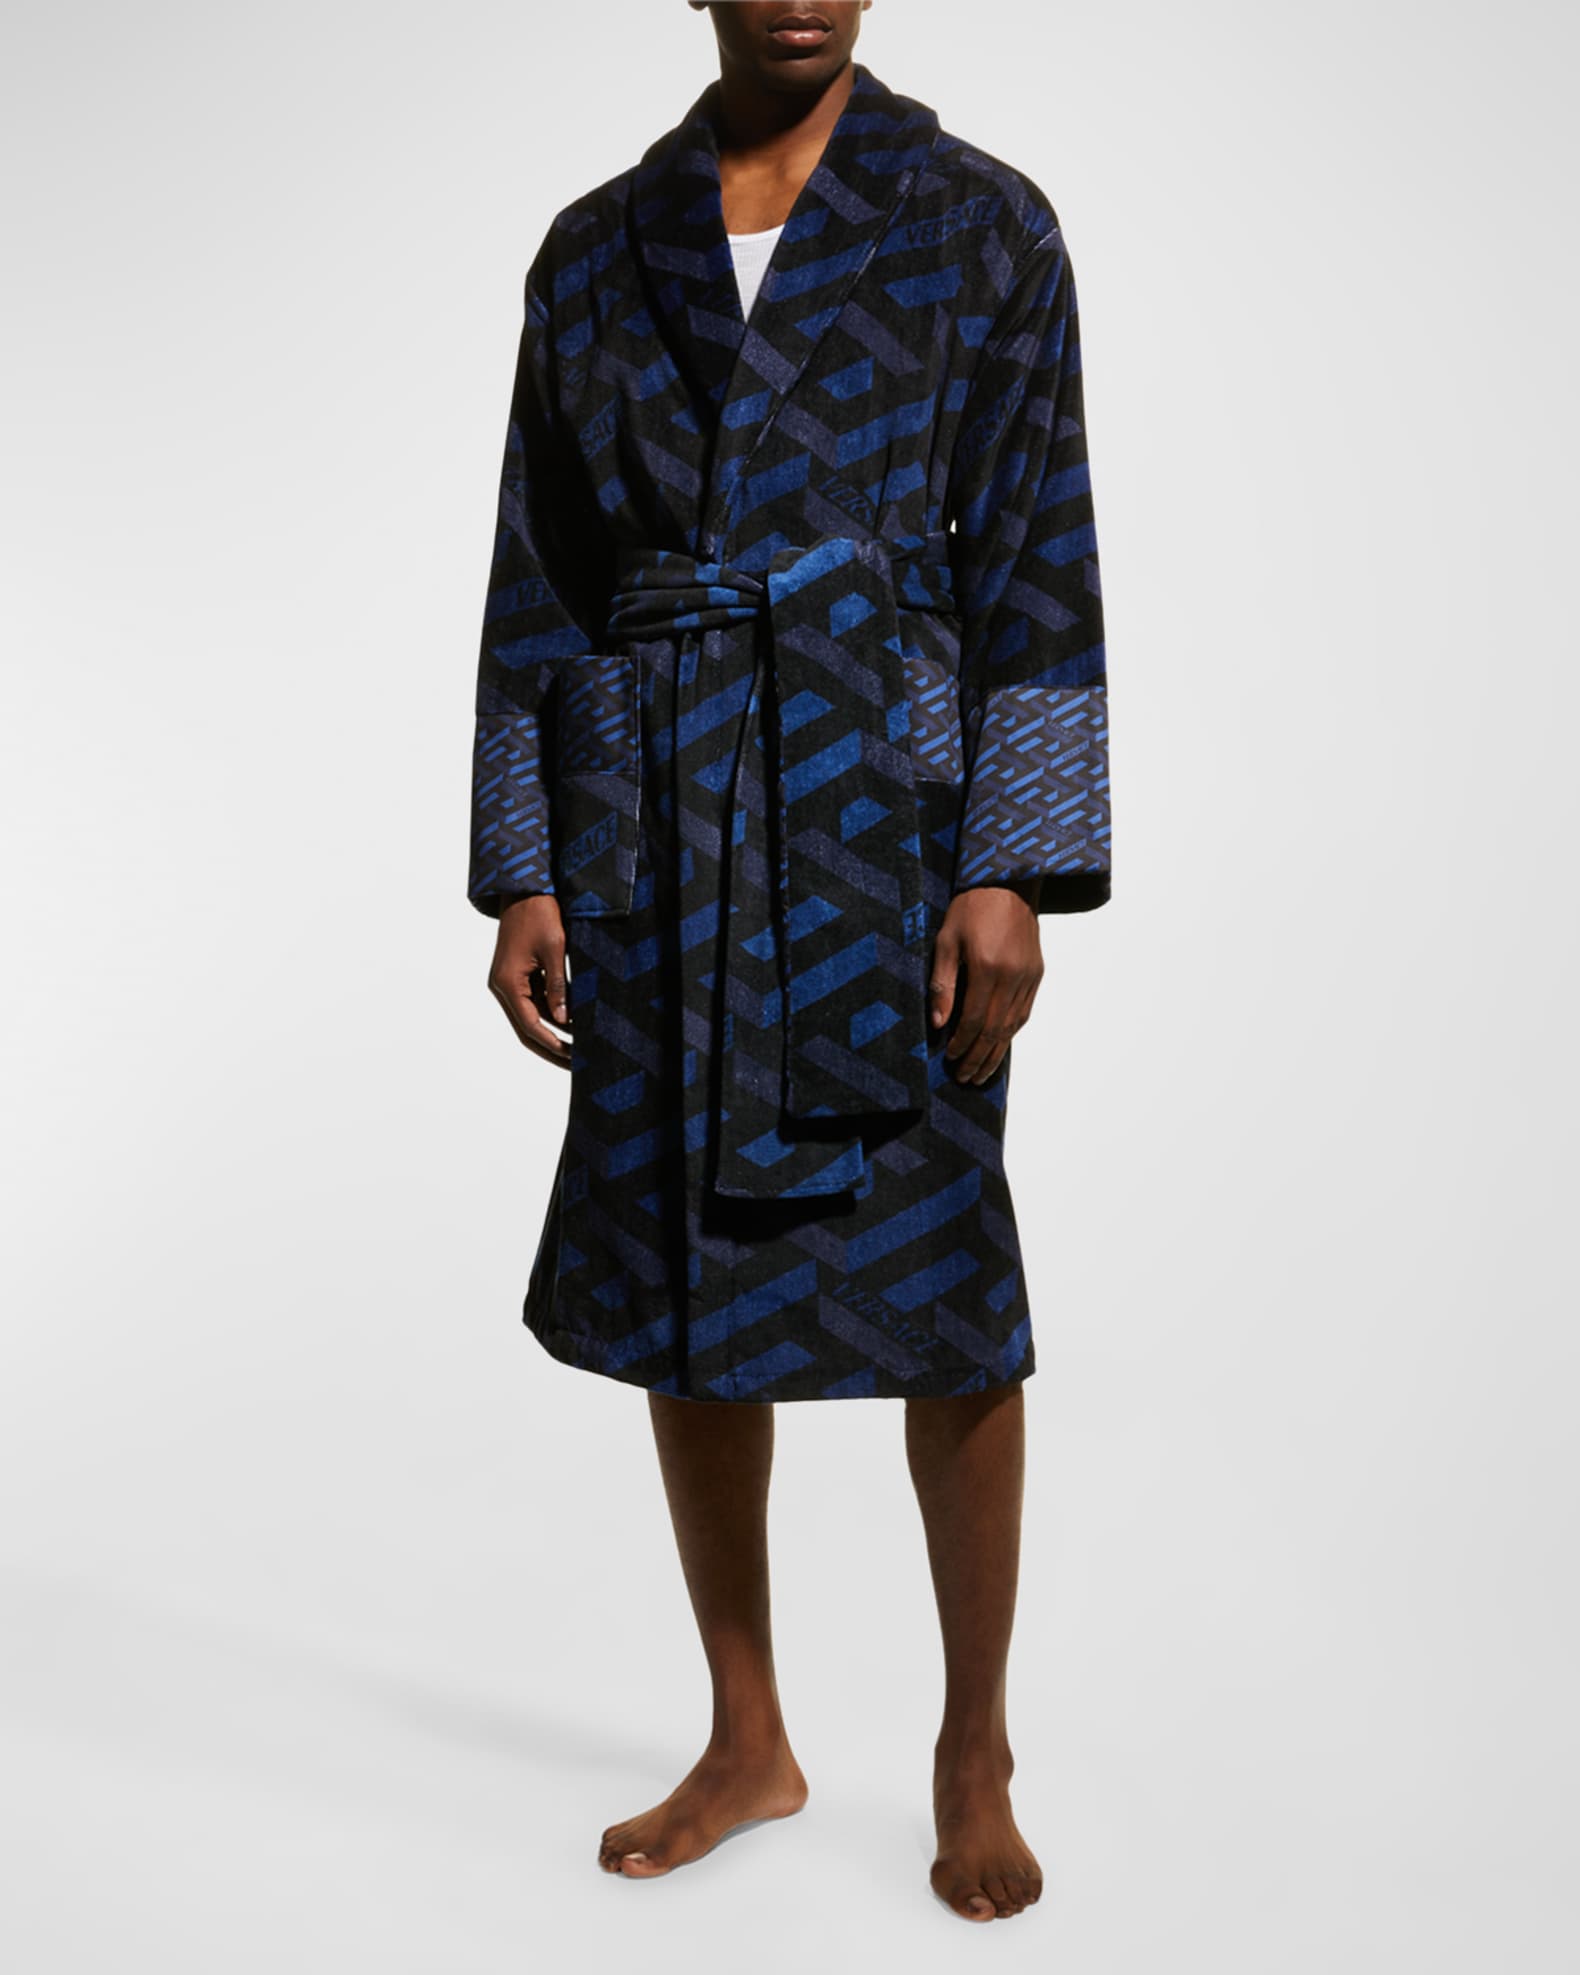 inhoudsopgave Eigenlijk Bergbeklimmer Versace Men's Greca Cotton Robe | Neiman Marcus